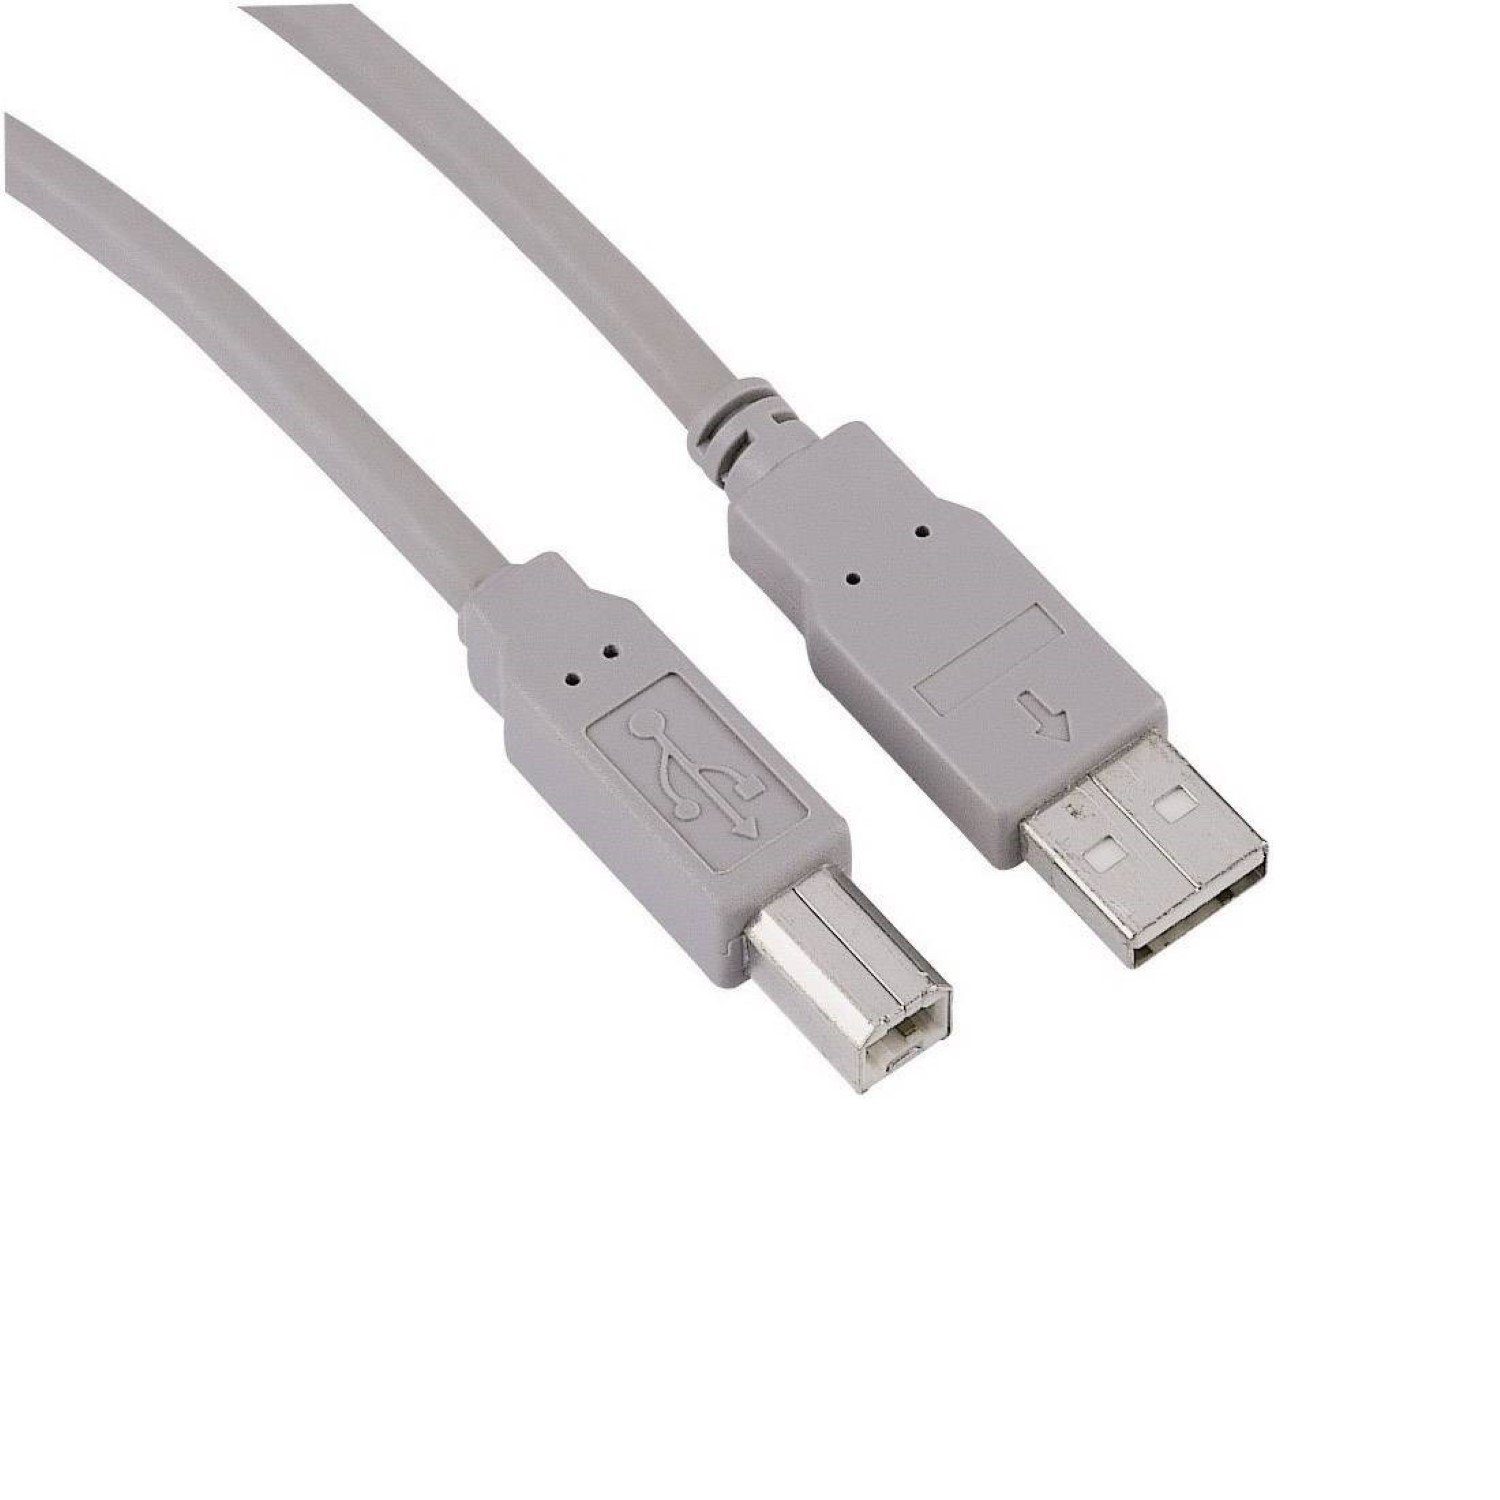 Hama USB-Kabel Anschlusskabel USB 2.0 1,8m USB-Kabel, USB Typ A,USB Typ A,  Keine, USB 2.0, passend für PC, Notebook, Maus, Mouse, Tastatur, Drucker,  Scanner, Webcam, externe Festplatte HDD, etc.